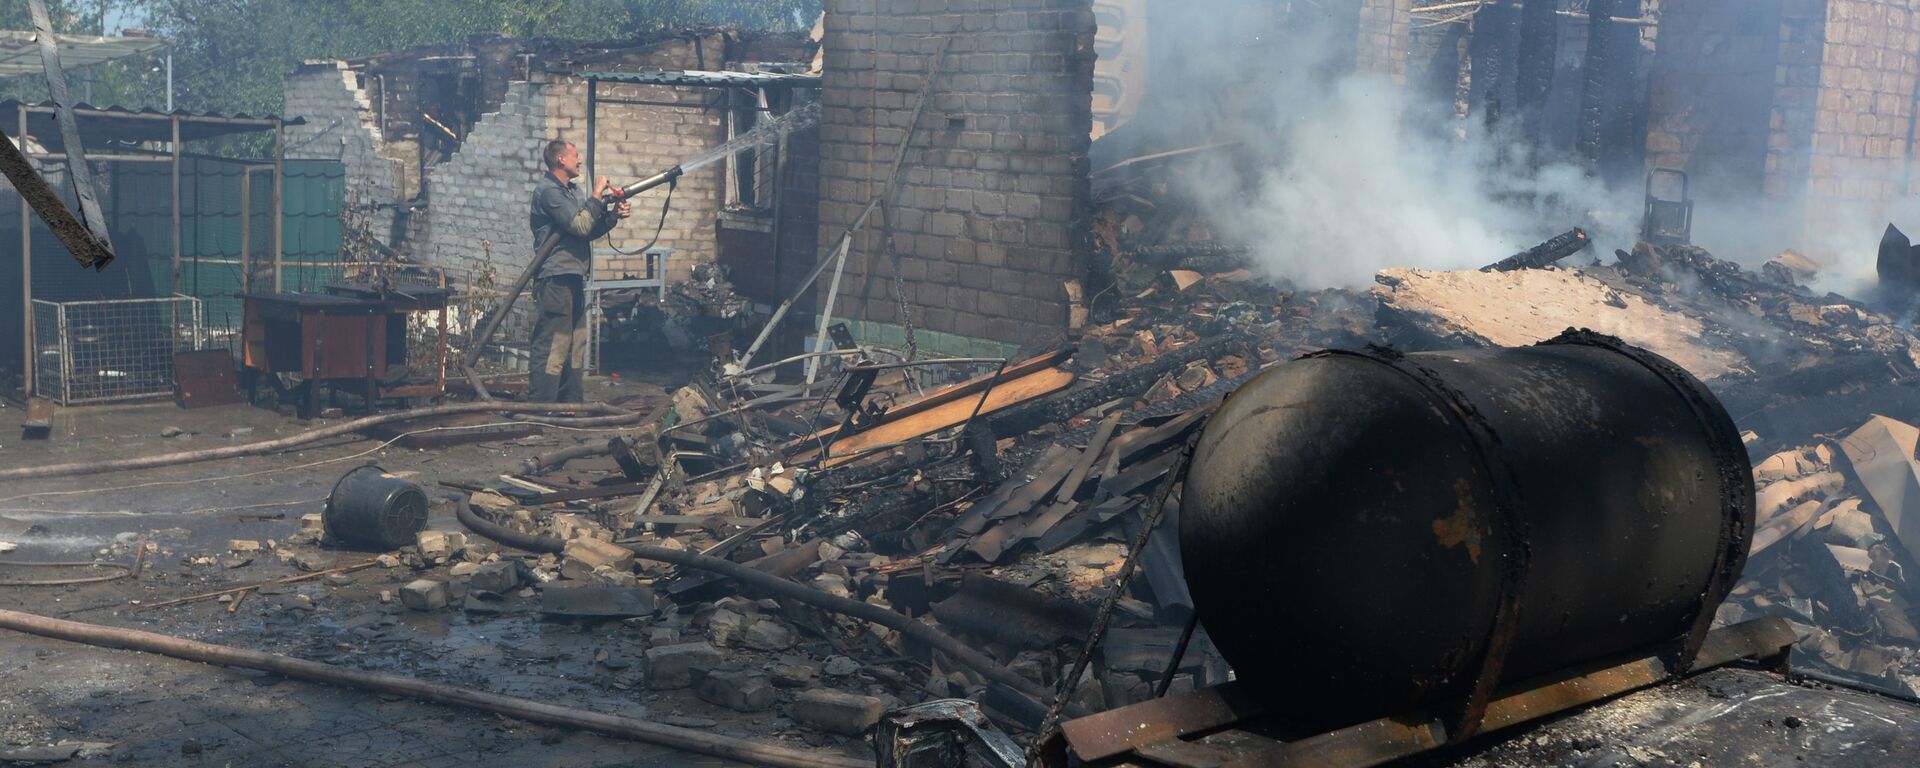 Уништене приватне куће након што је украјинска војска гранатирала село Горловка у Донбасу - Sputnik Србија, 1920, 01.05.2021